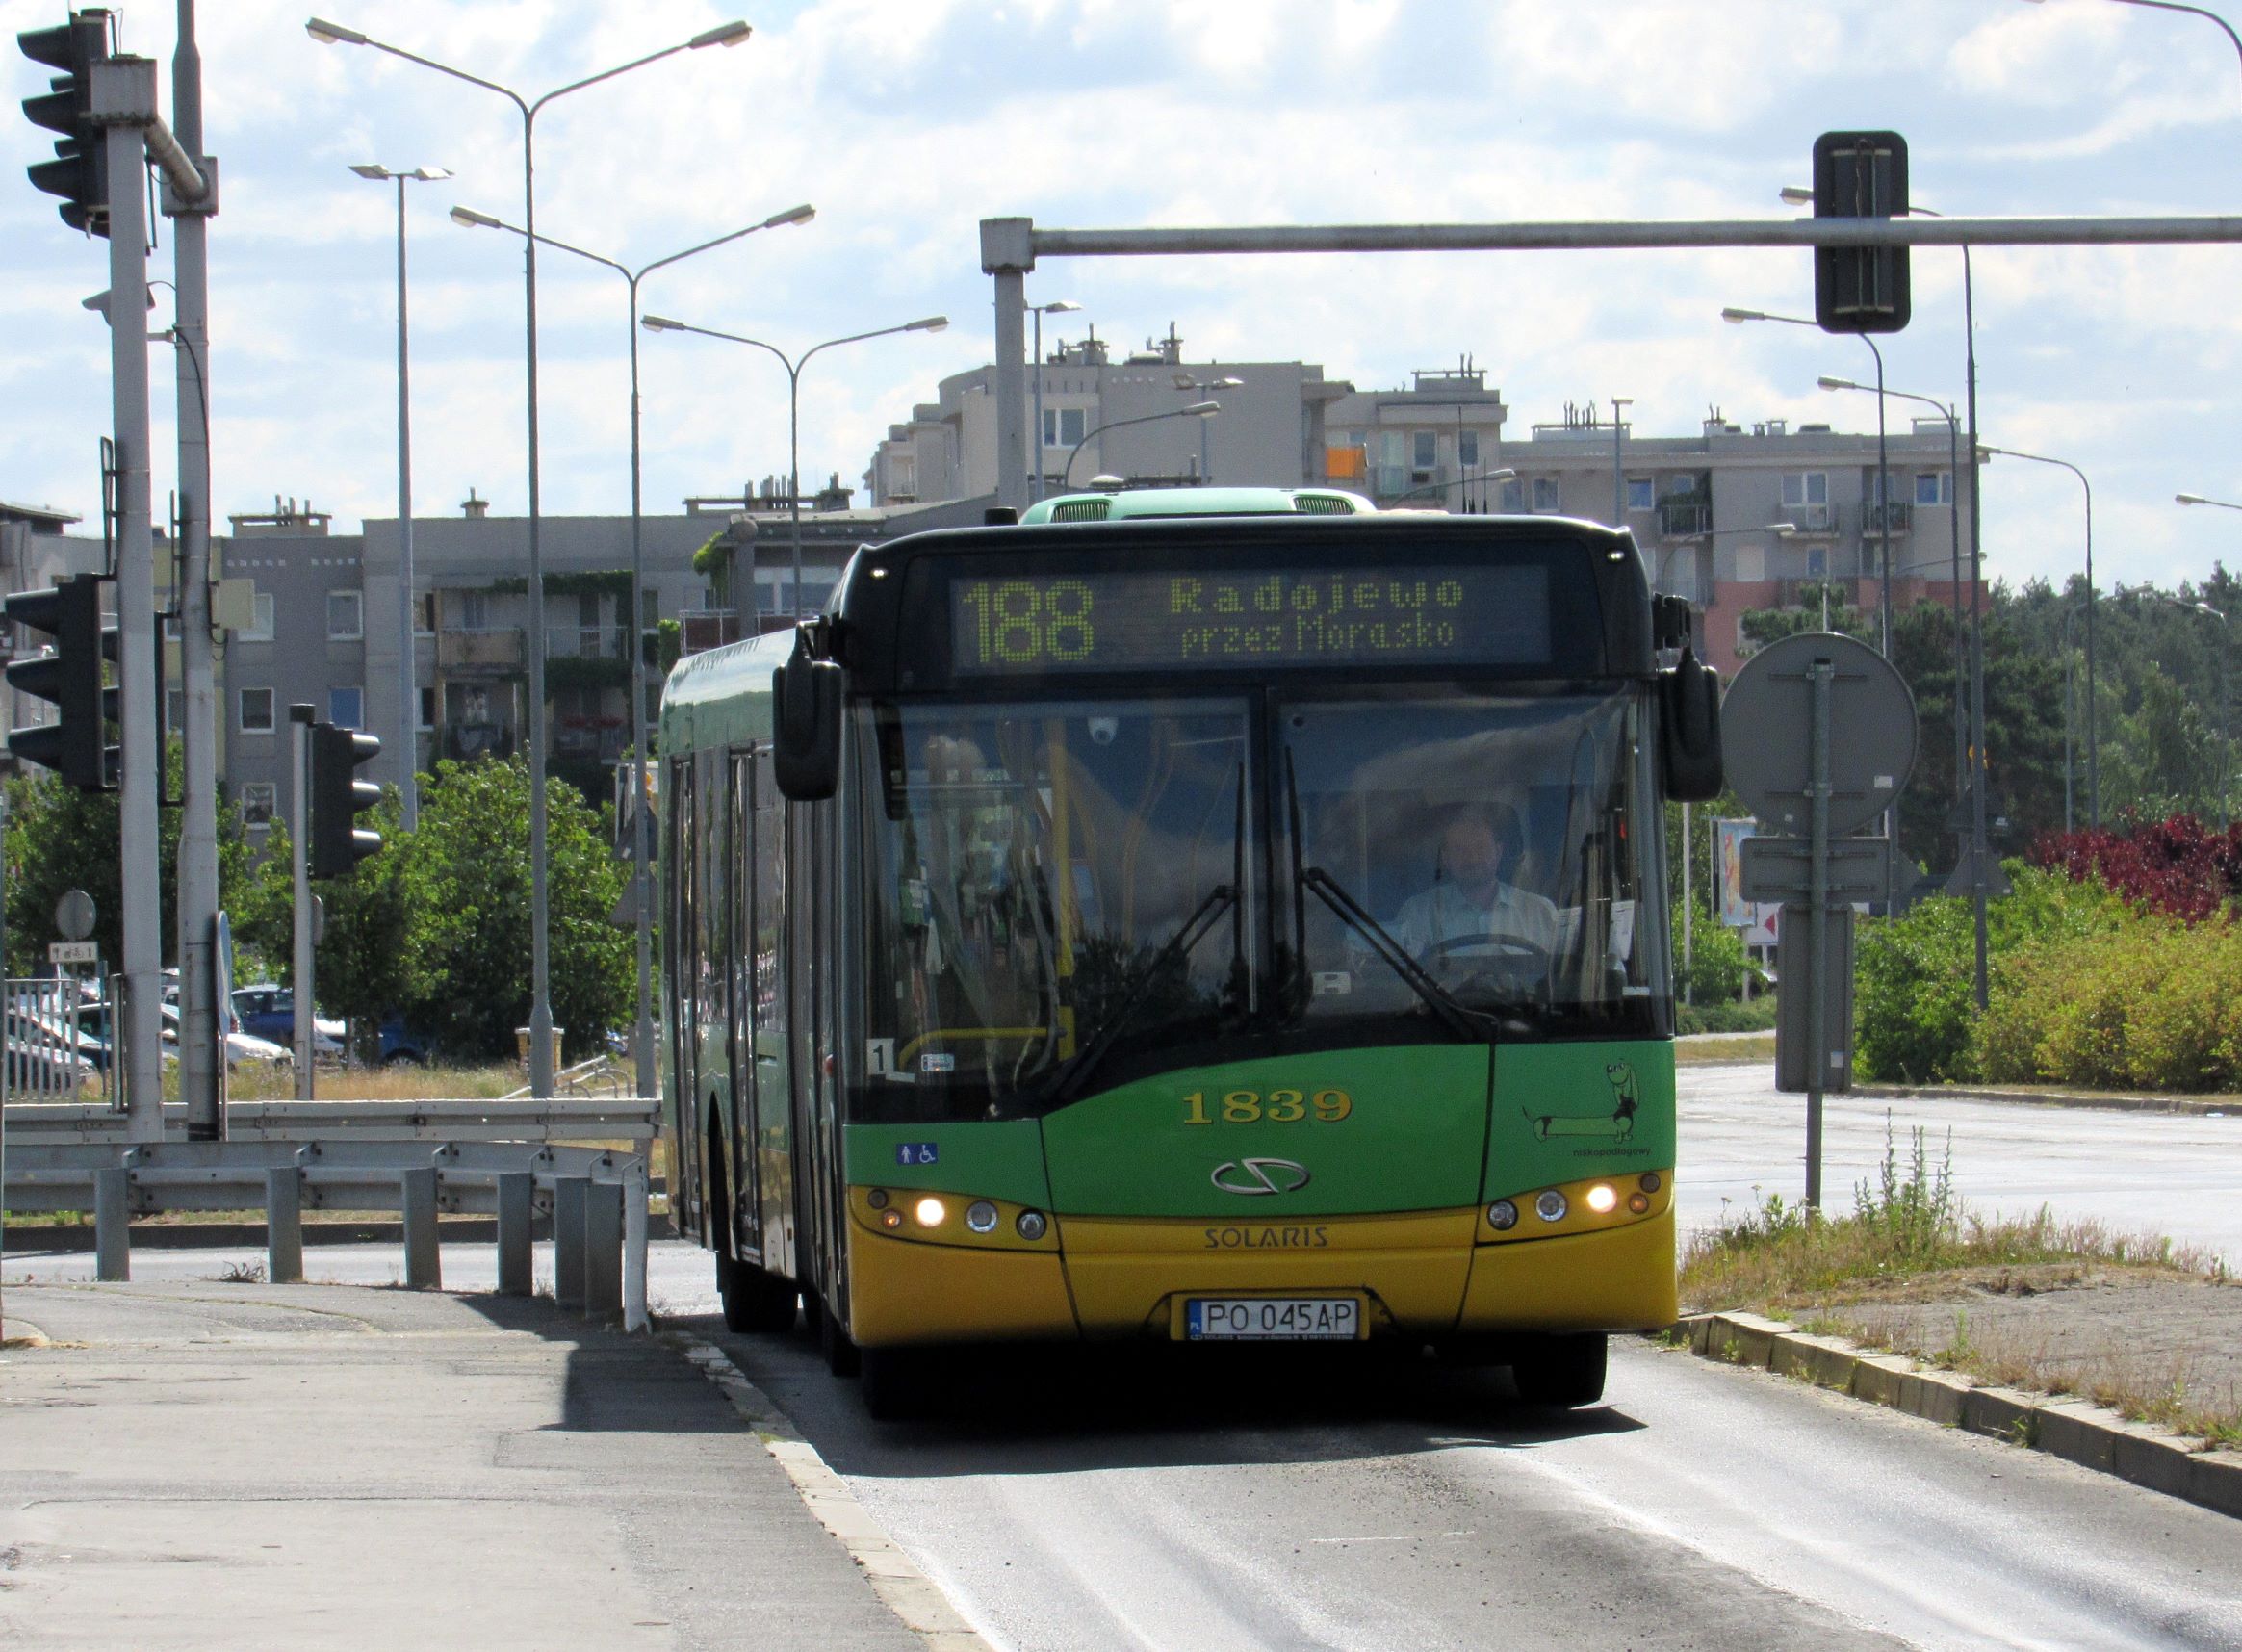 Od 4 maja (wtorek) zniesione zostaną ograniczenia w transporcie publicznym ZTM Poznań – wraca roboczy rozkład jazdy